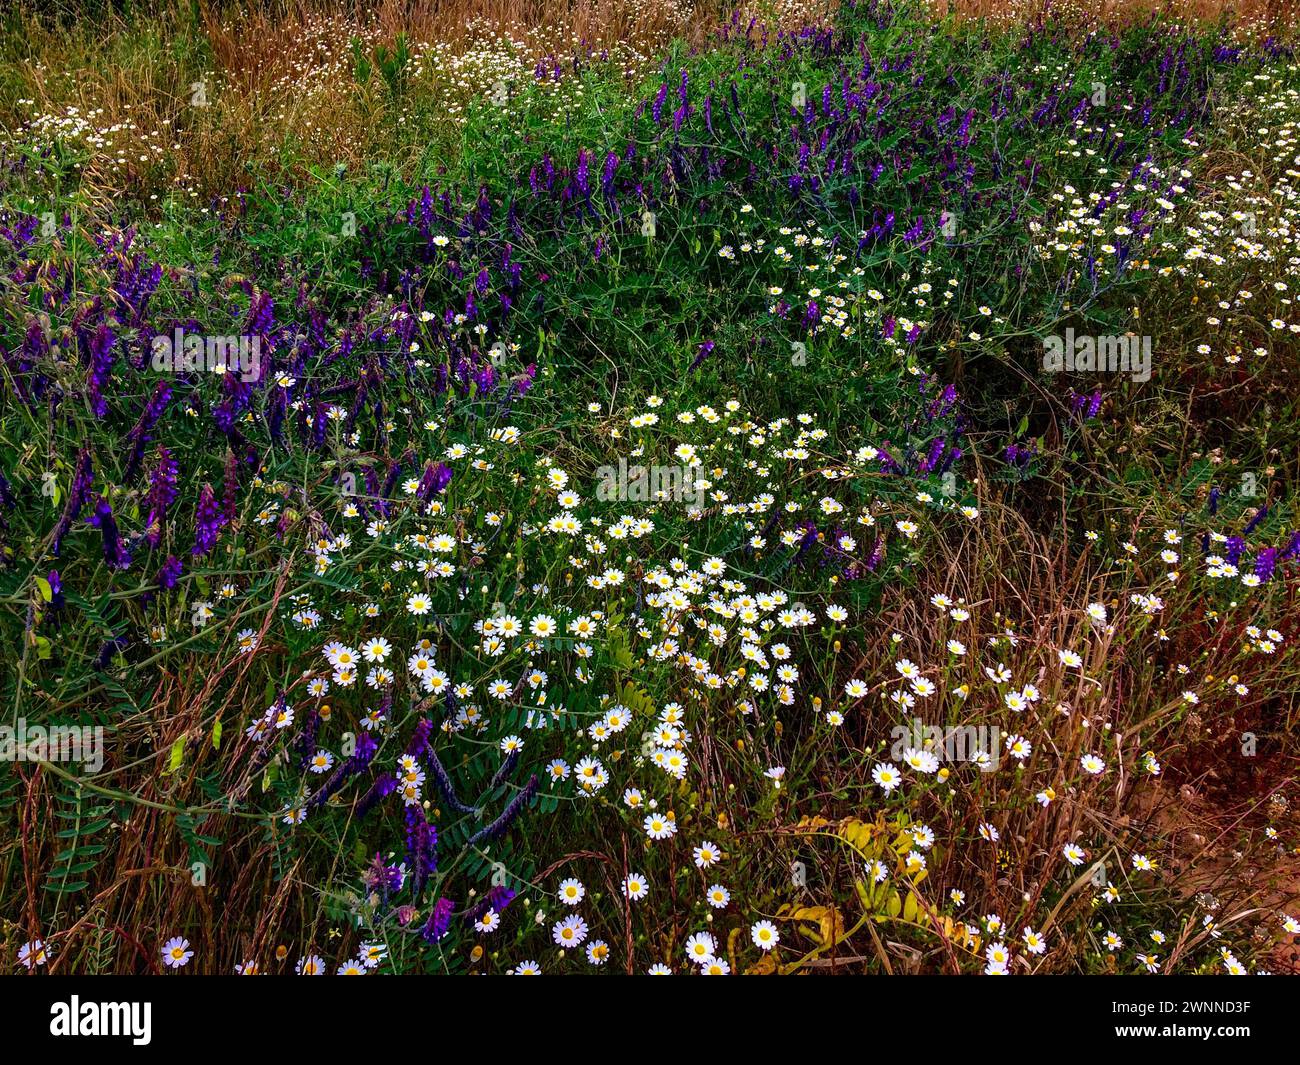 L'immagine cattura un campo brulicante di fiori selvatici viola e bianchi in mezzo a un fogliame verde. Foto Stock